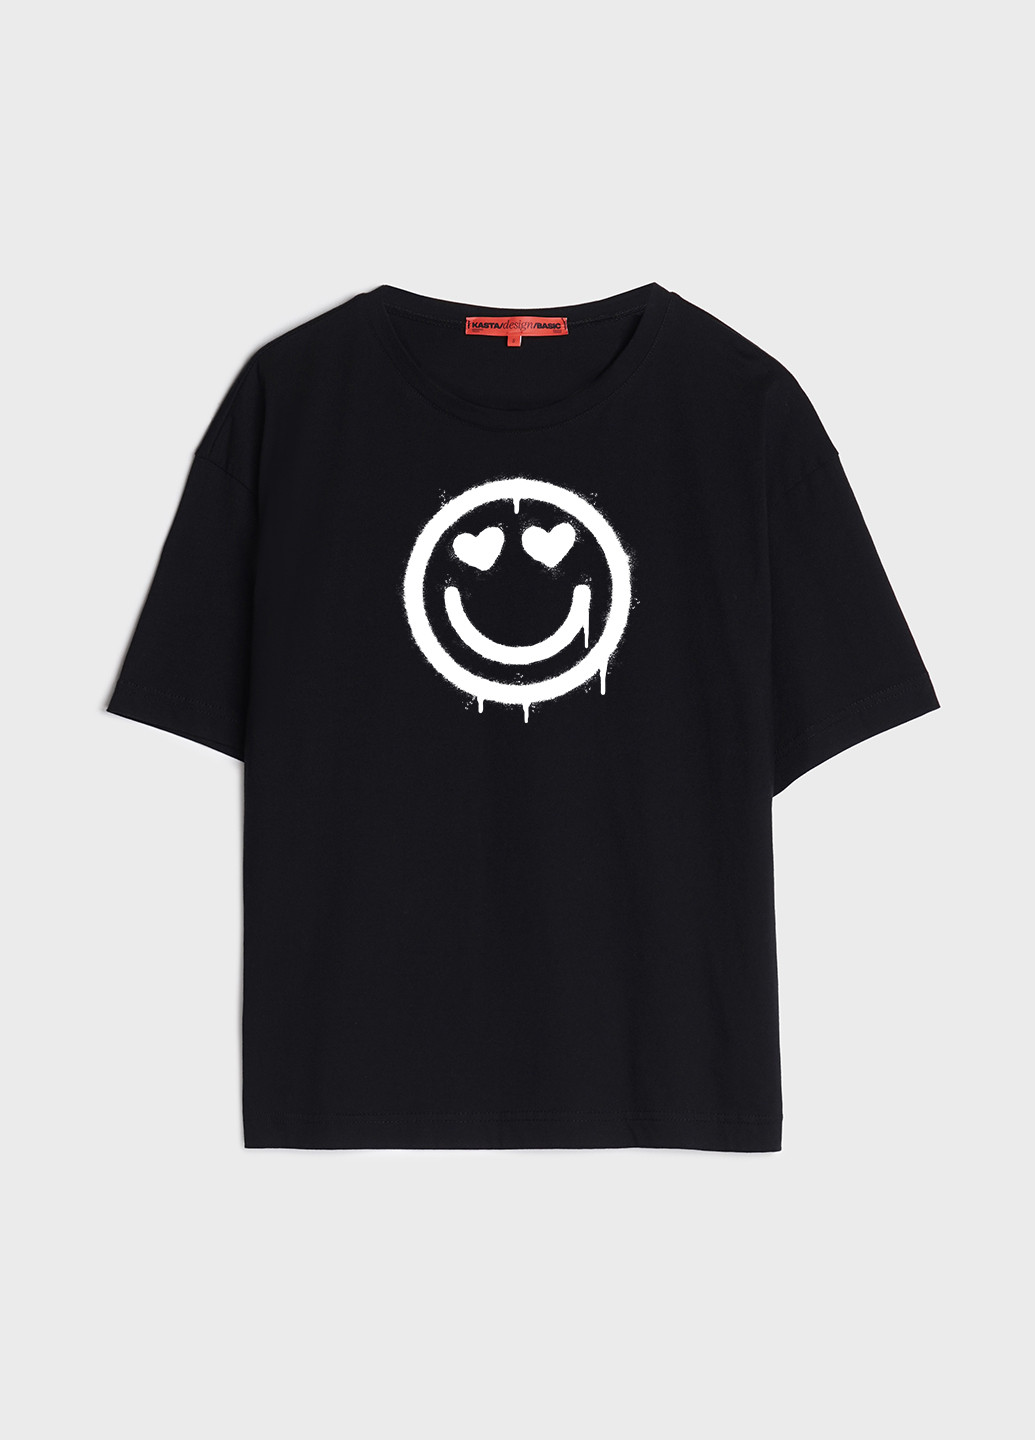 Черная летняя футболка женская оверсайз смайлик KASTA design